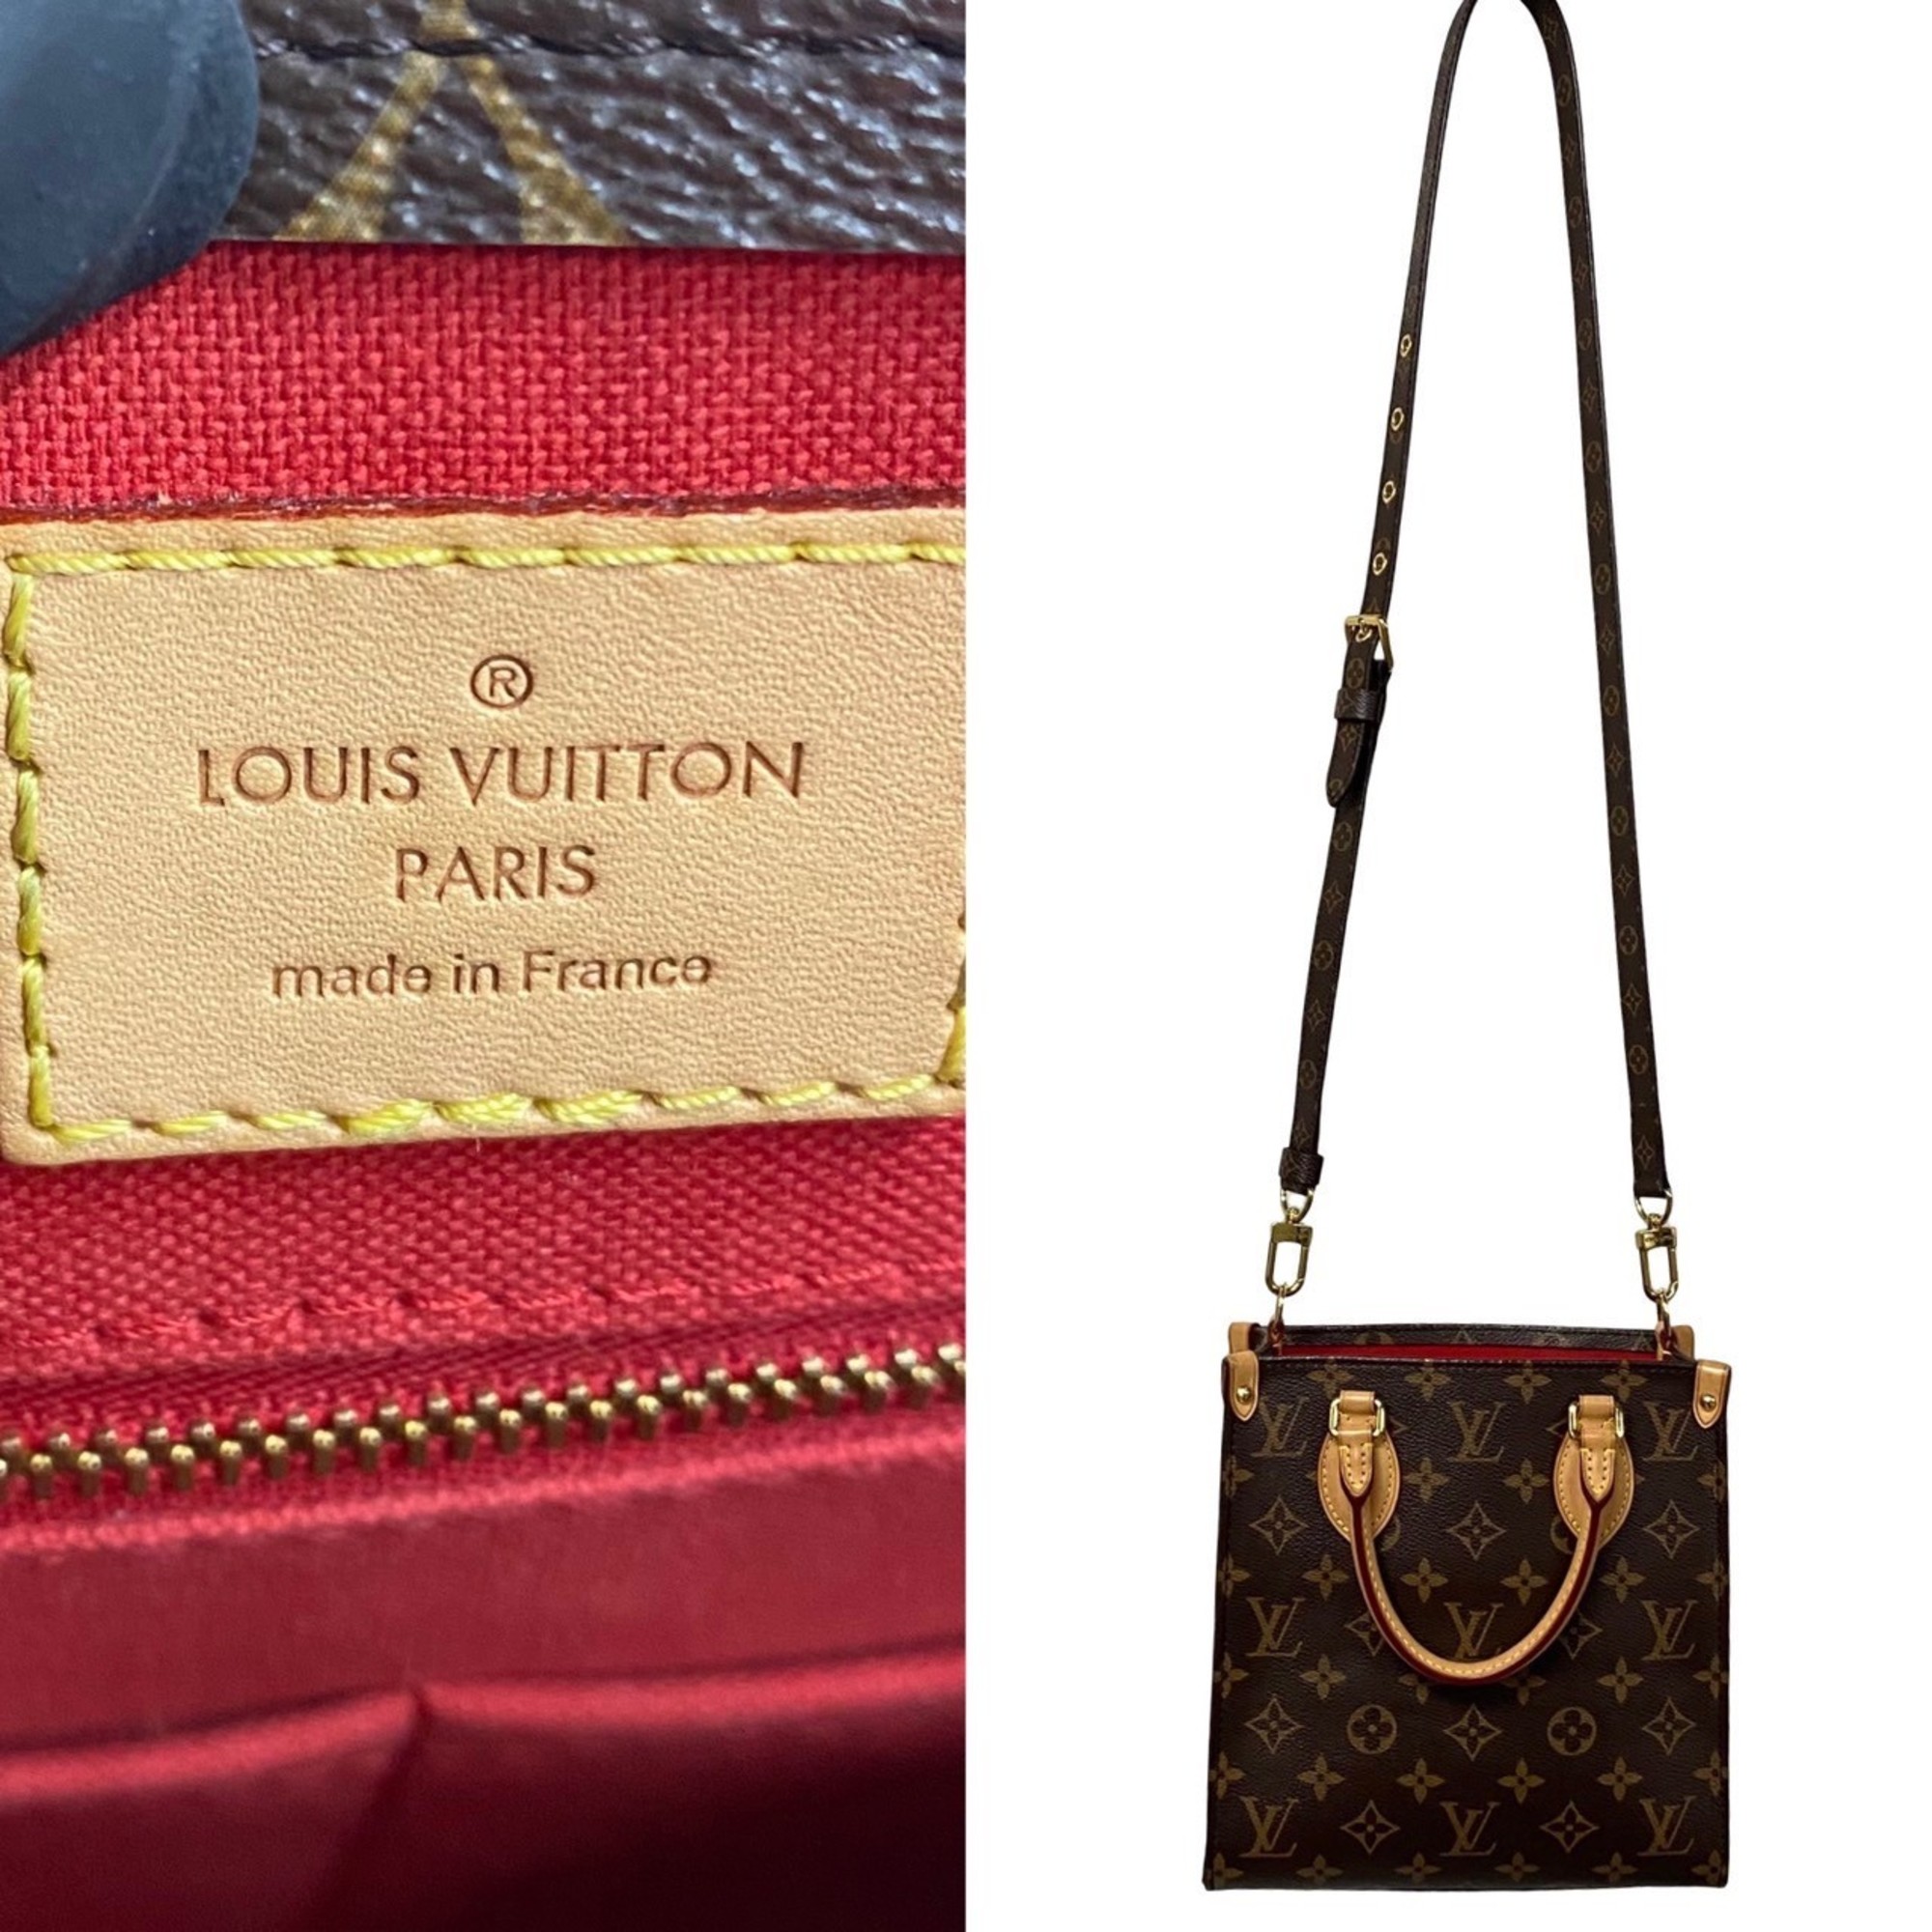 LOUIS VUITTON Louis Vuitton Sac Plat BB Monogram Leather 2way Handbag Shoulder Bag Brown 27705